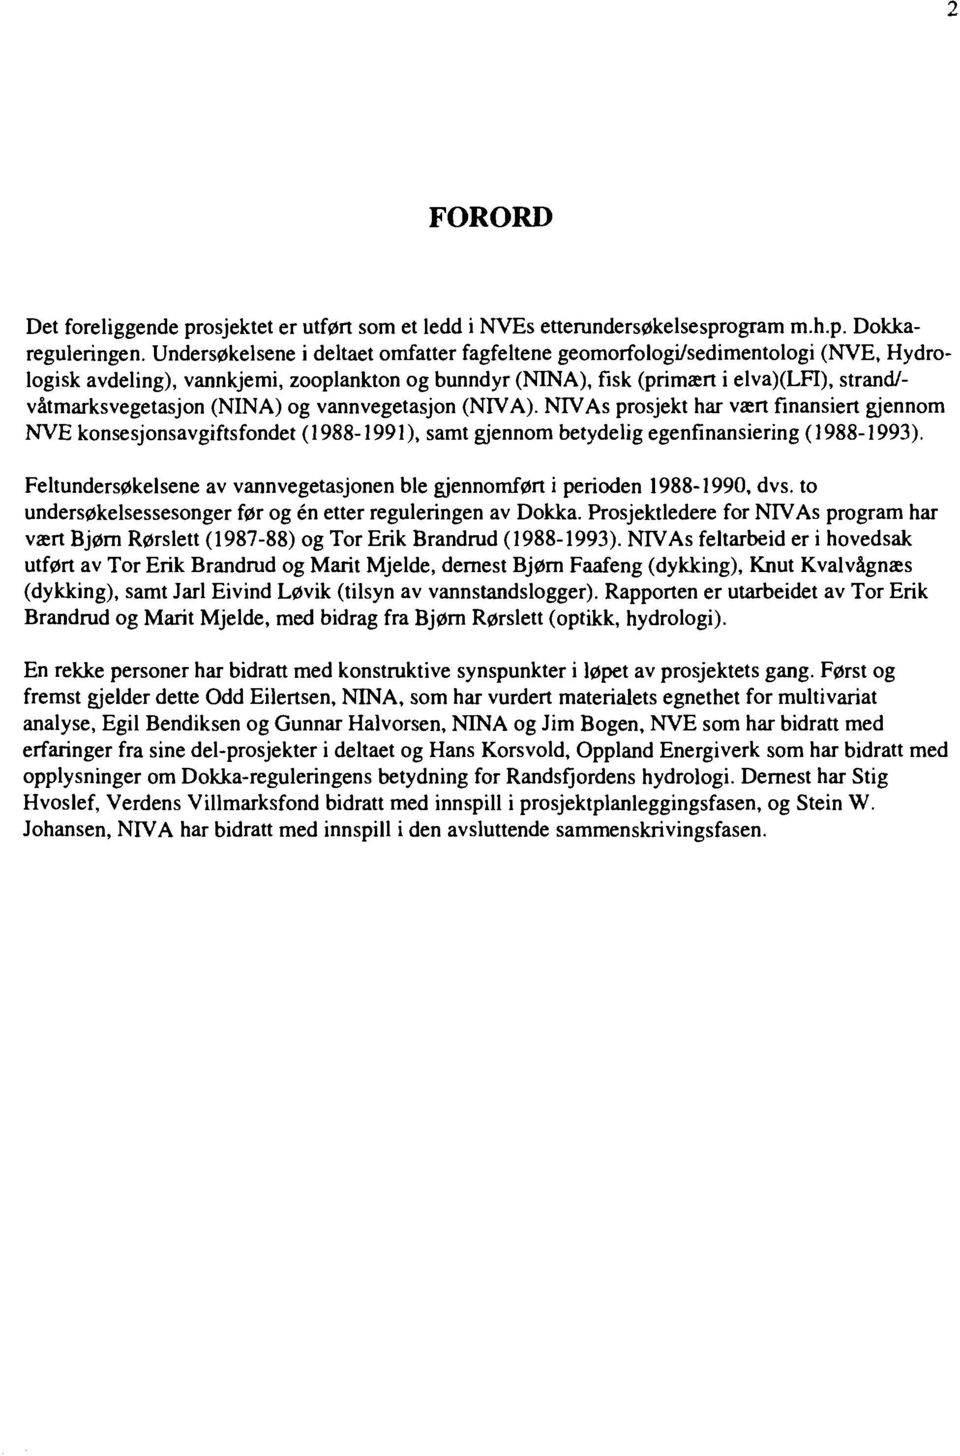 (NINA) og vannvegetasjon (NIVÅ). NTVAs prosjekt har vært finansiert gjennom NVE konsesjonsavgiftsfondet (988-99), samt gjennom betydelig egenfinansiering (988-99).